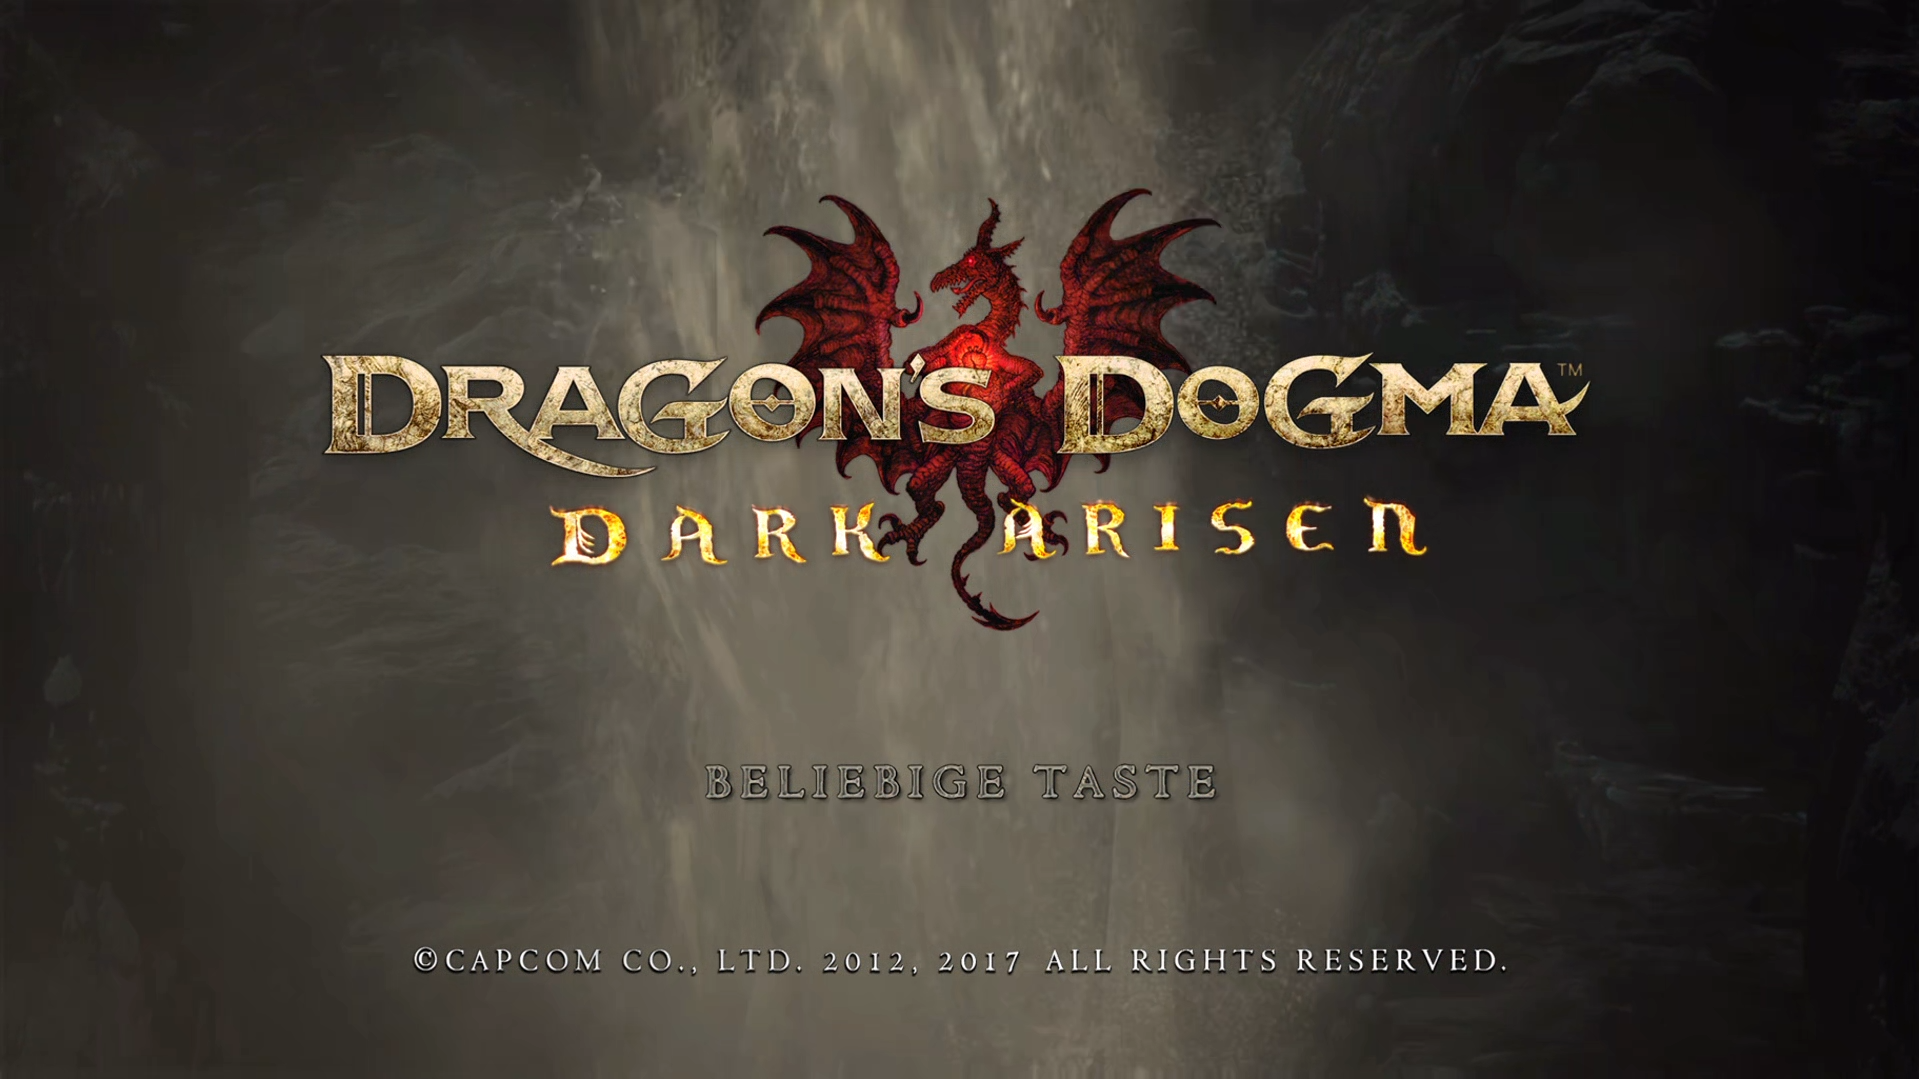 Karte | Dragons Dogma Dark Arisen - Gran Soren Karte deutsch | Karte.Guru